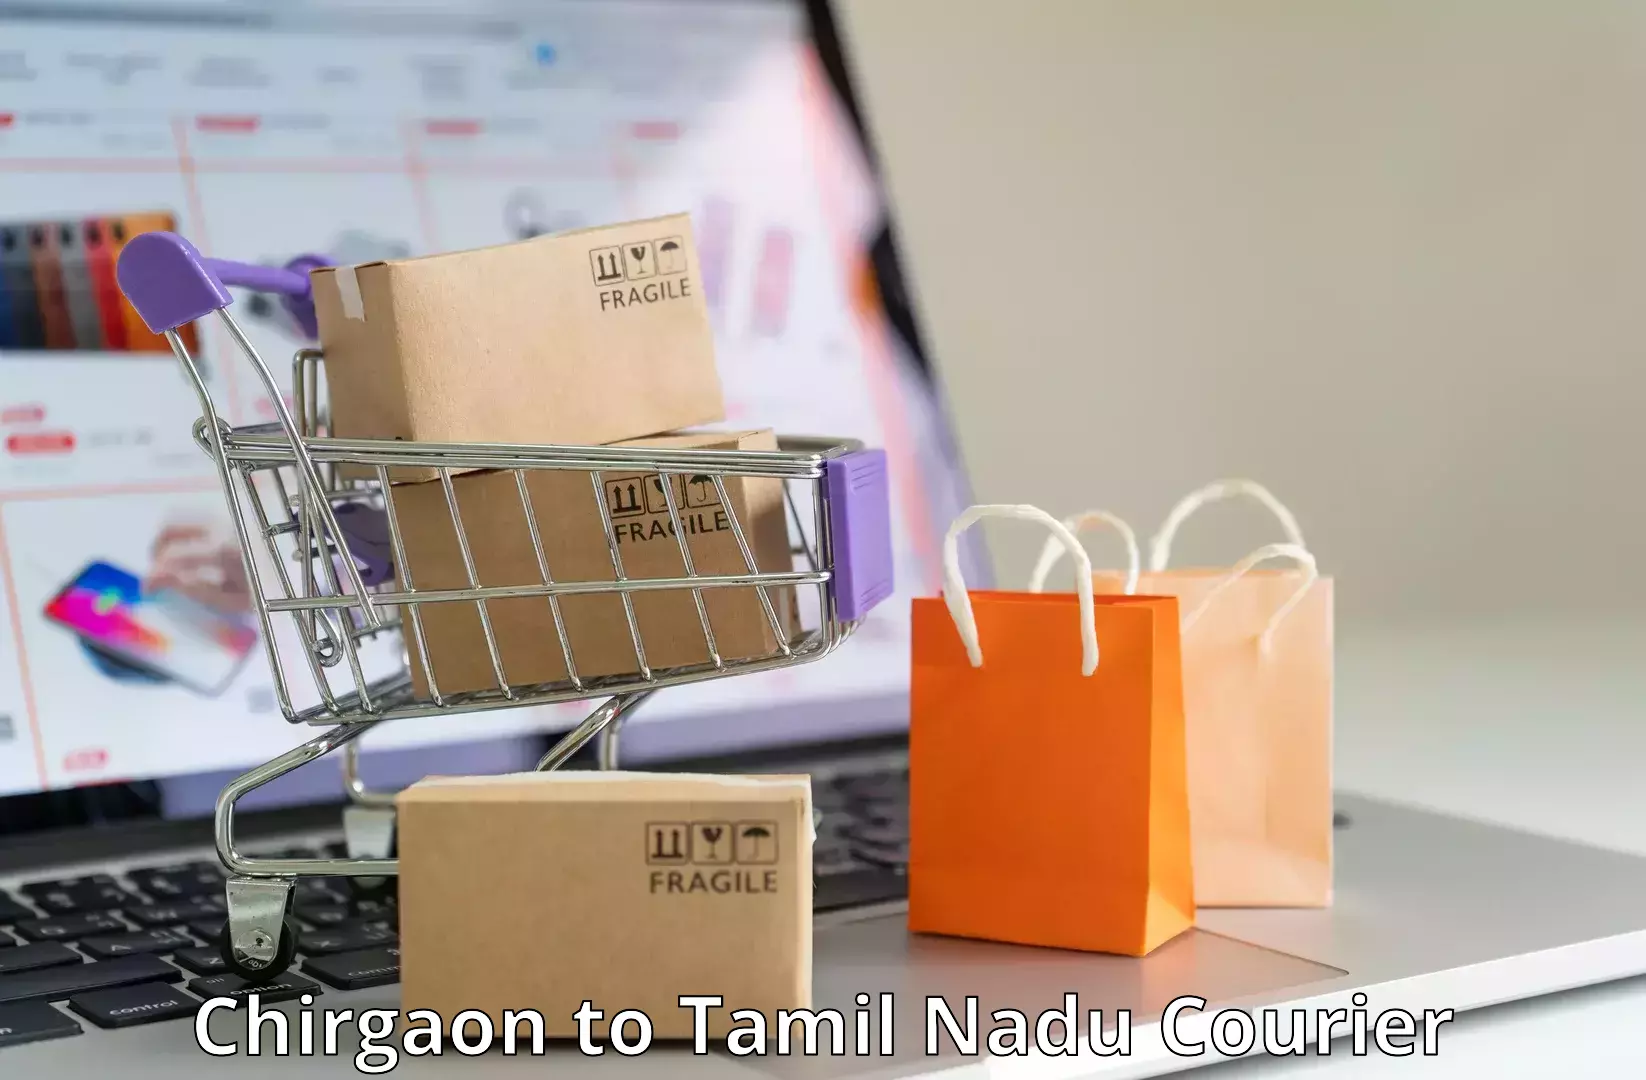 Logistics solutions Chirgaon to Tamil Nadu